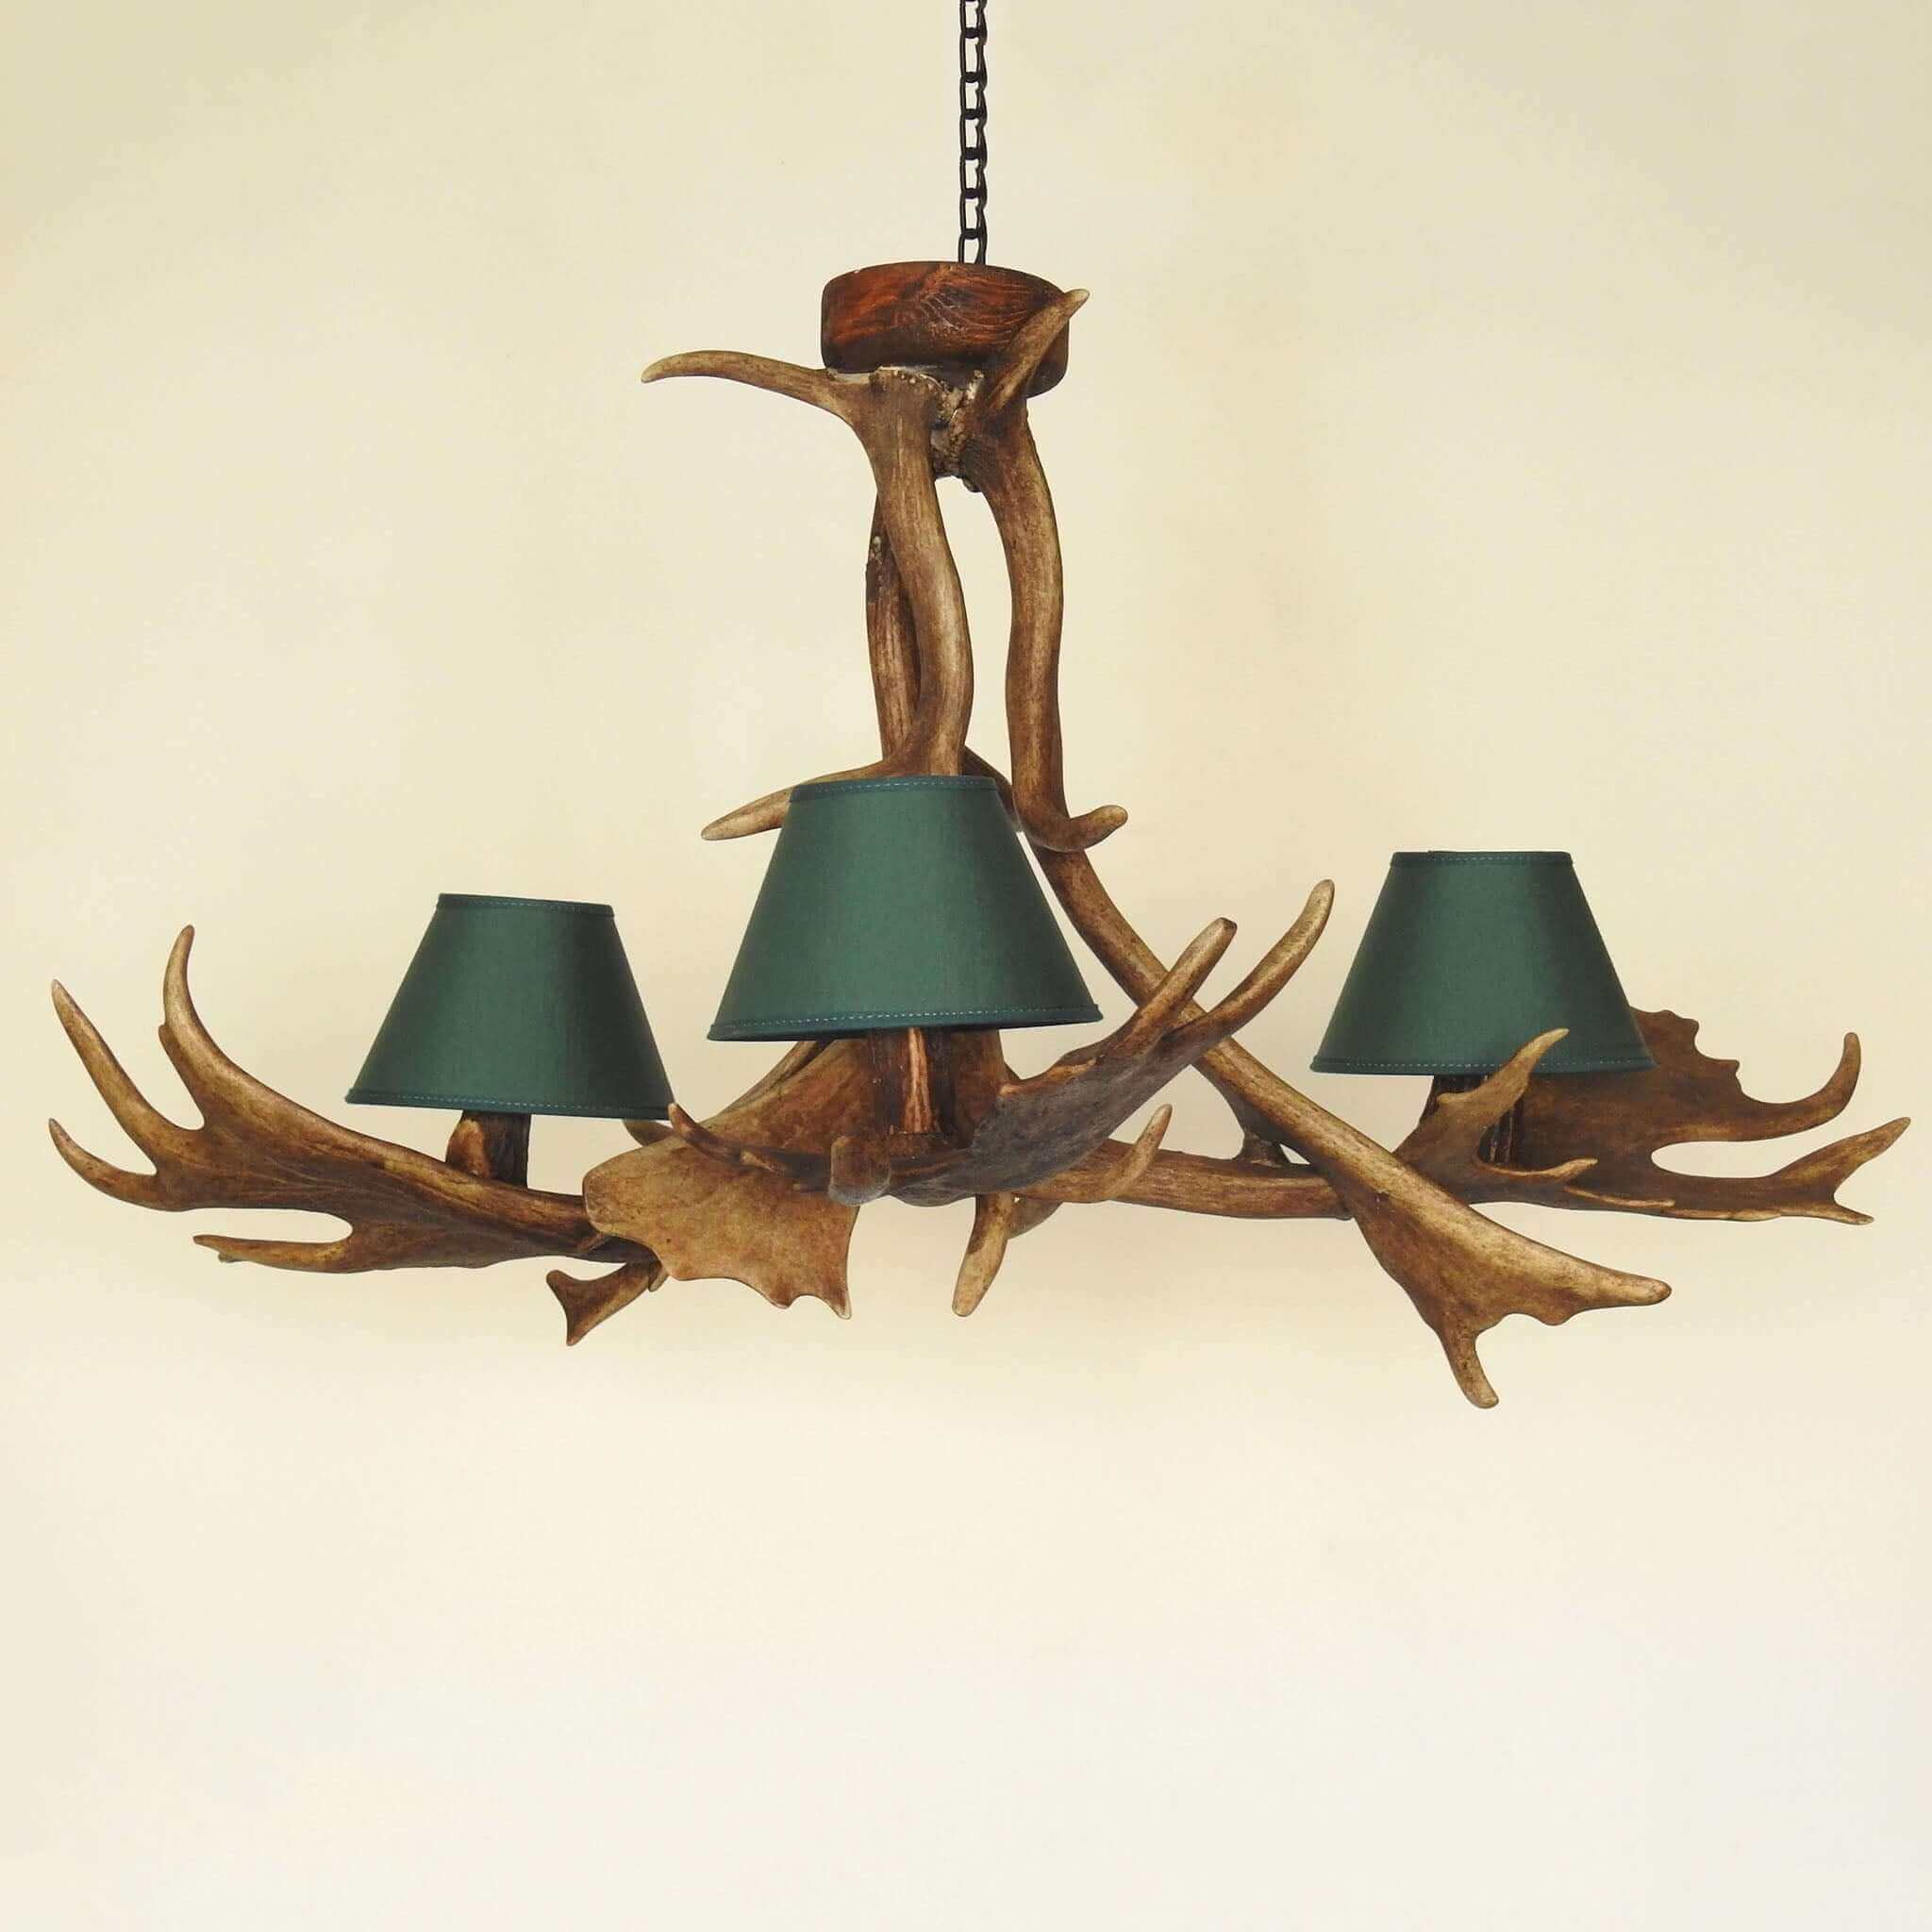 Fallow deer antler chandelier.